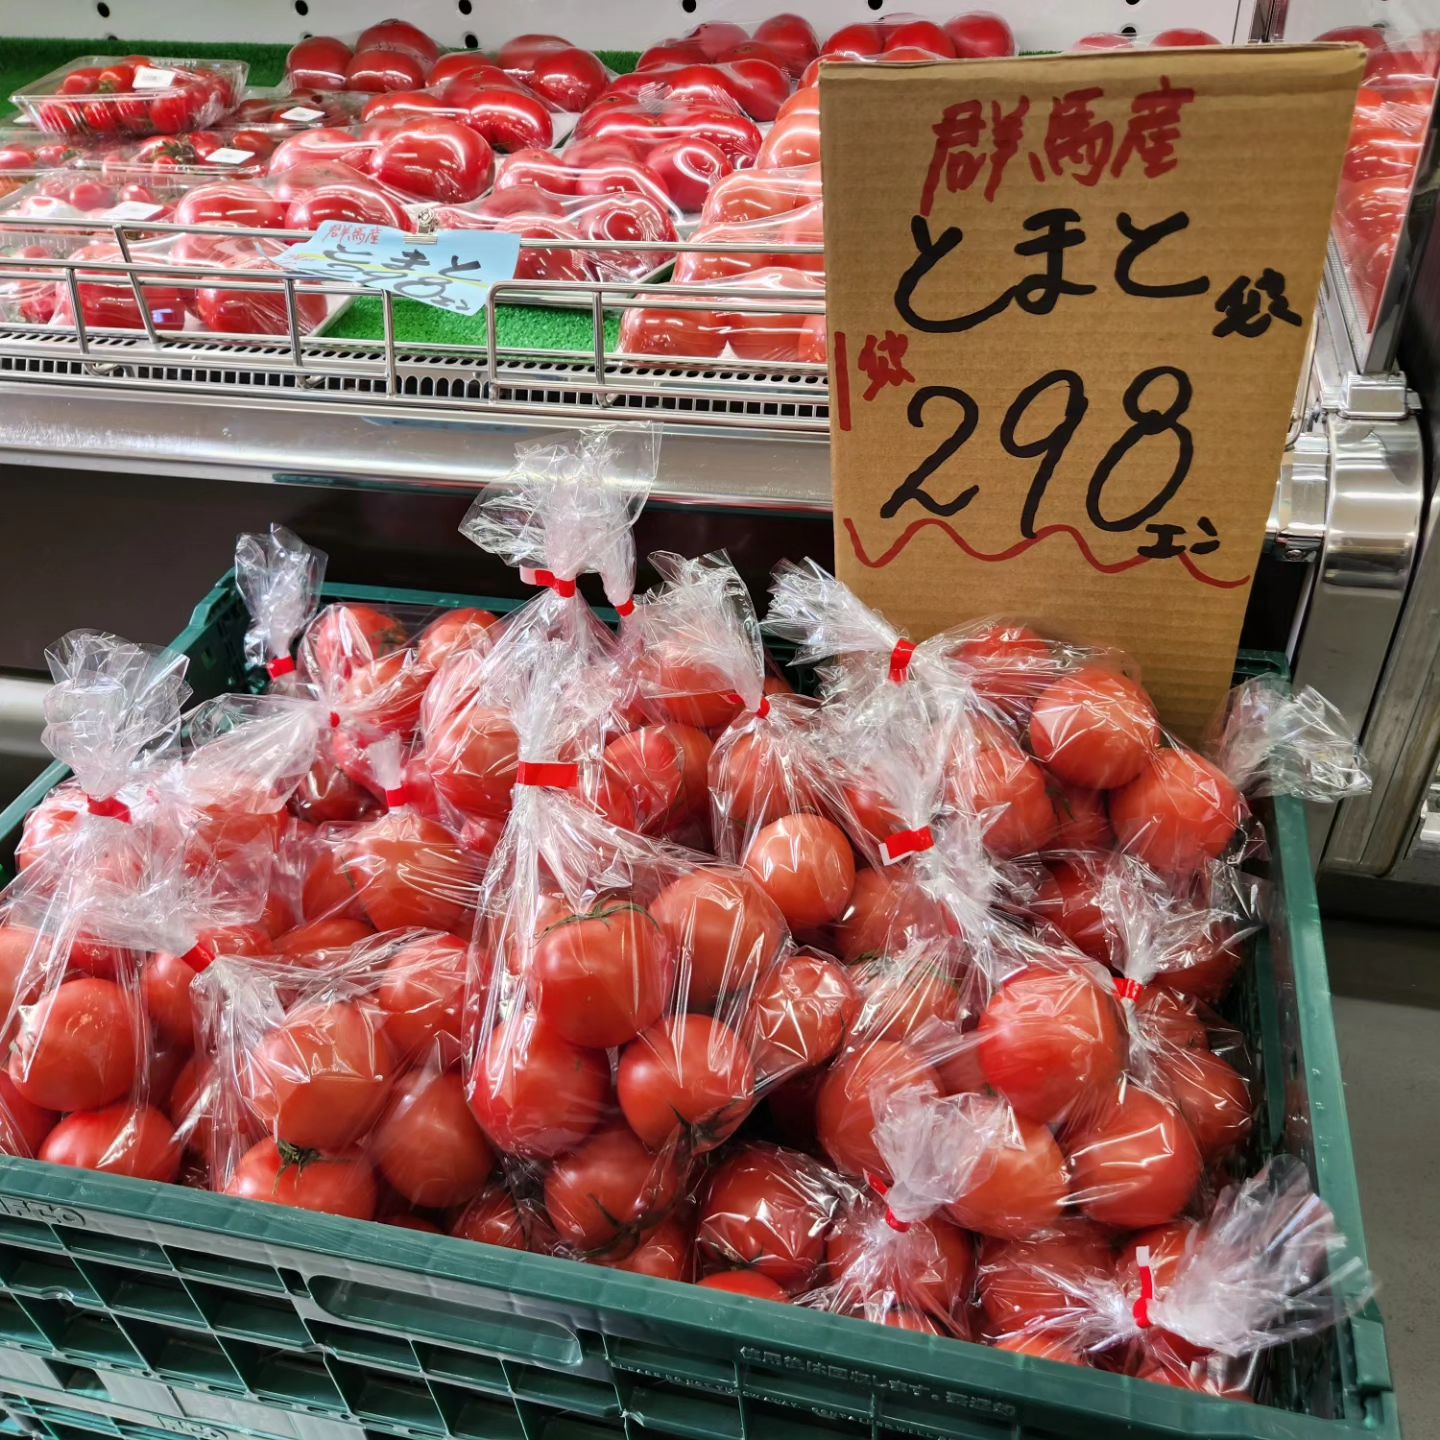 こんにちは

1/12(金)
11:00~18:30
本日のお値段紹介

トマトがお安くなっております!!

今日も１日よろしくお願いいたします。